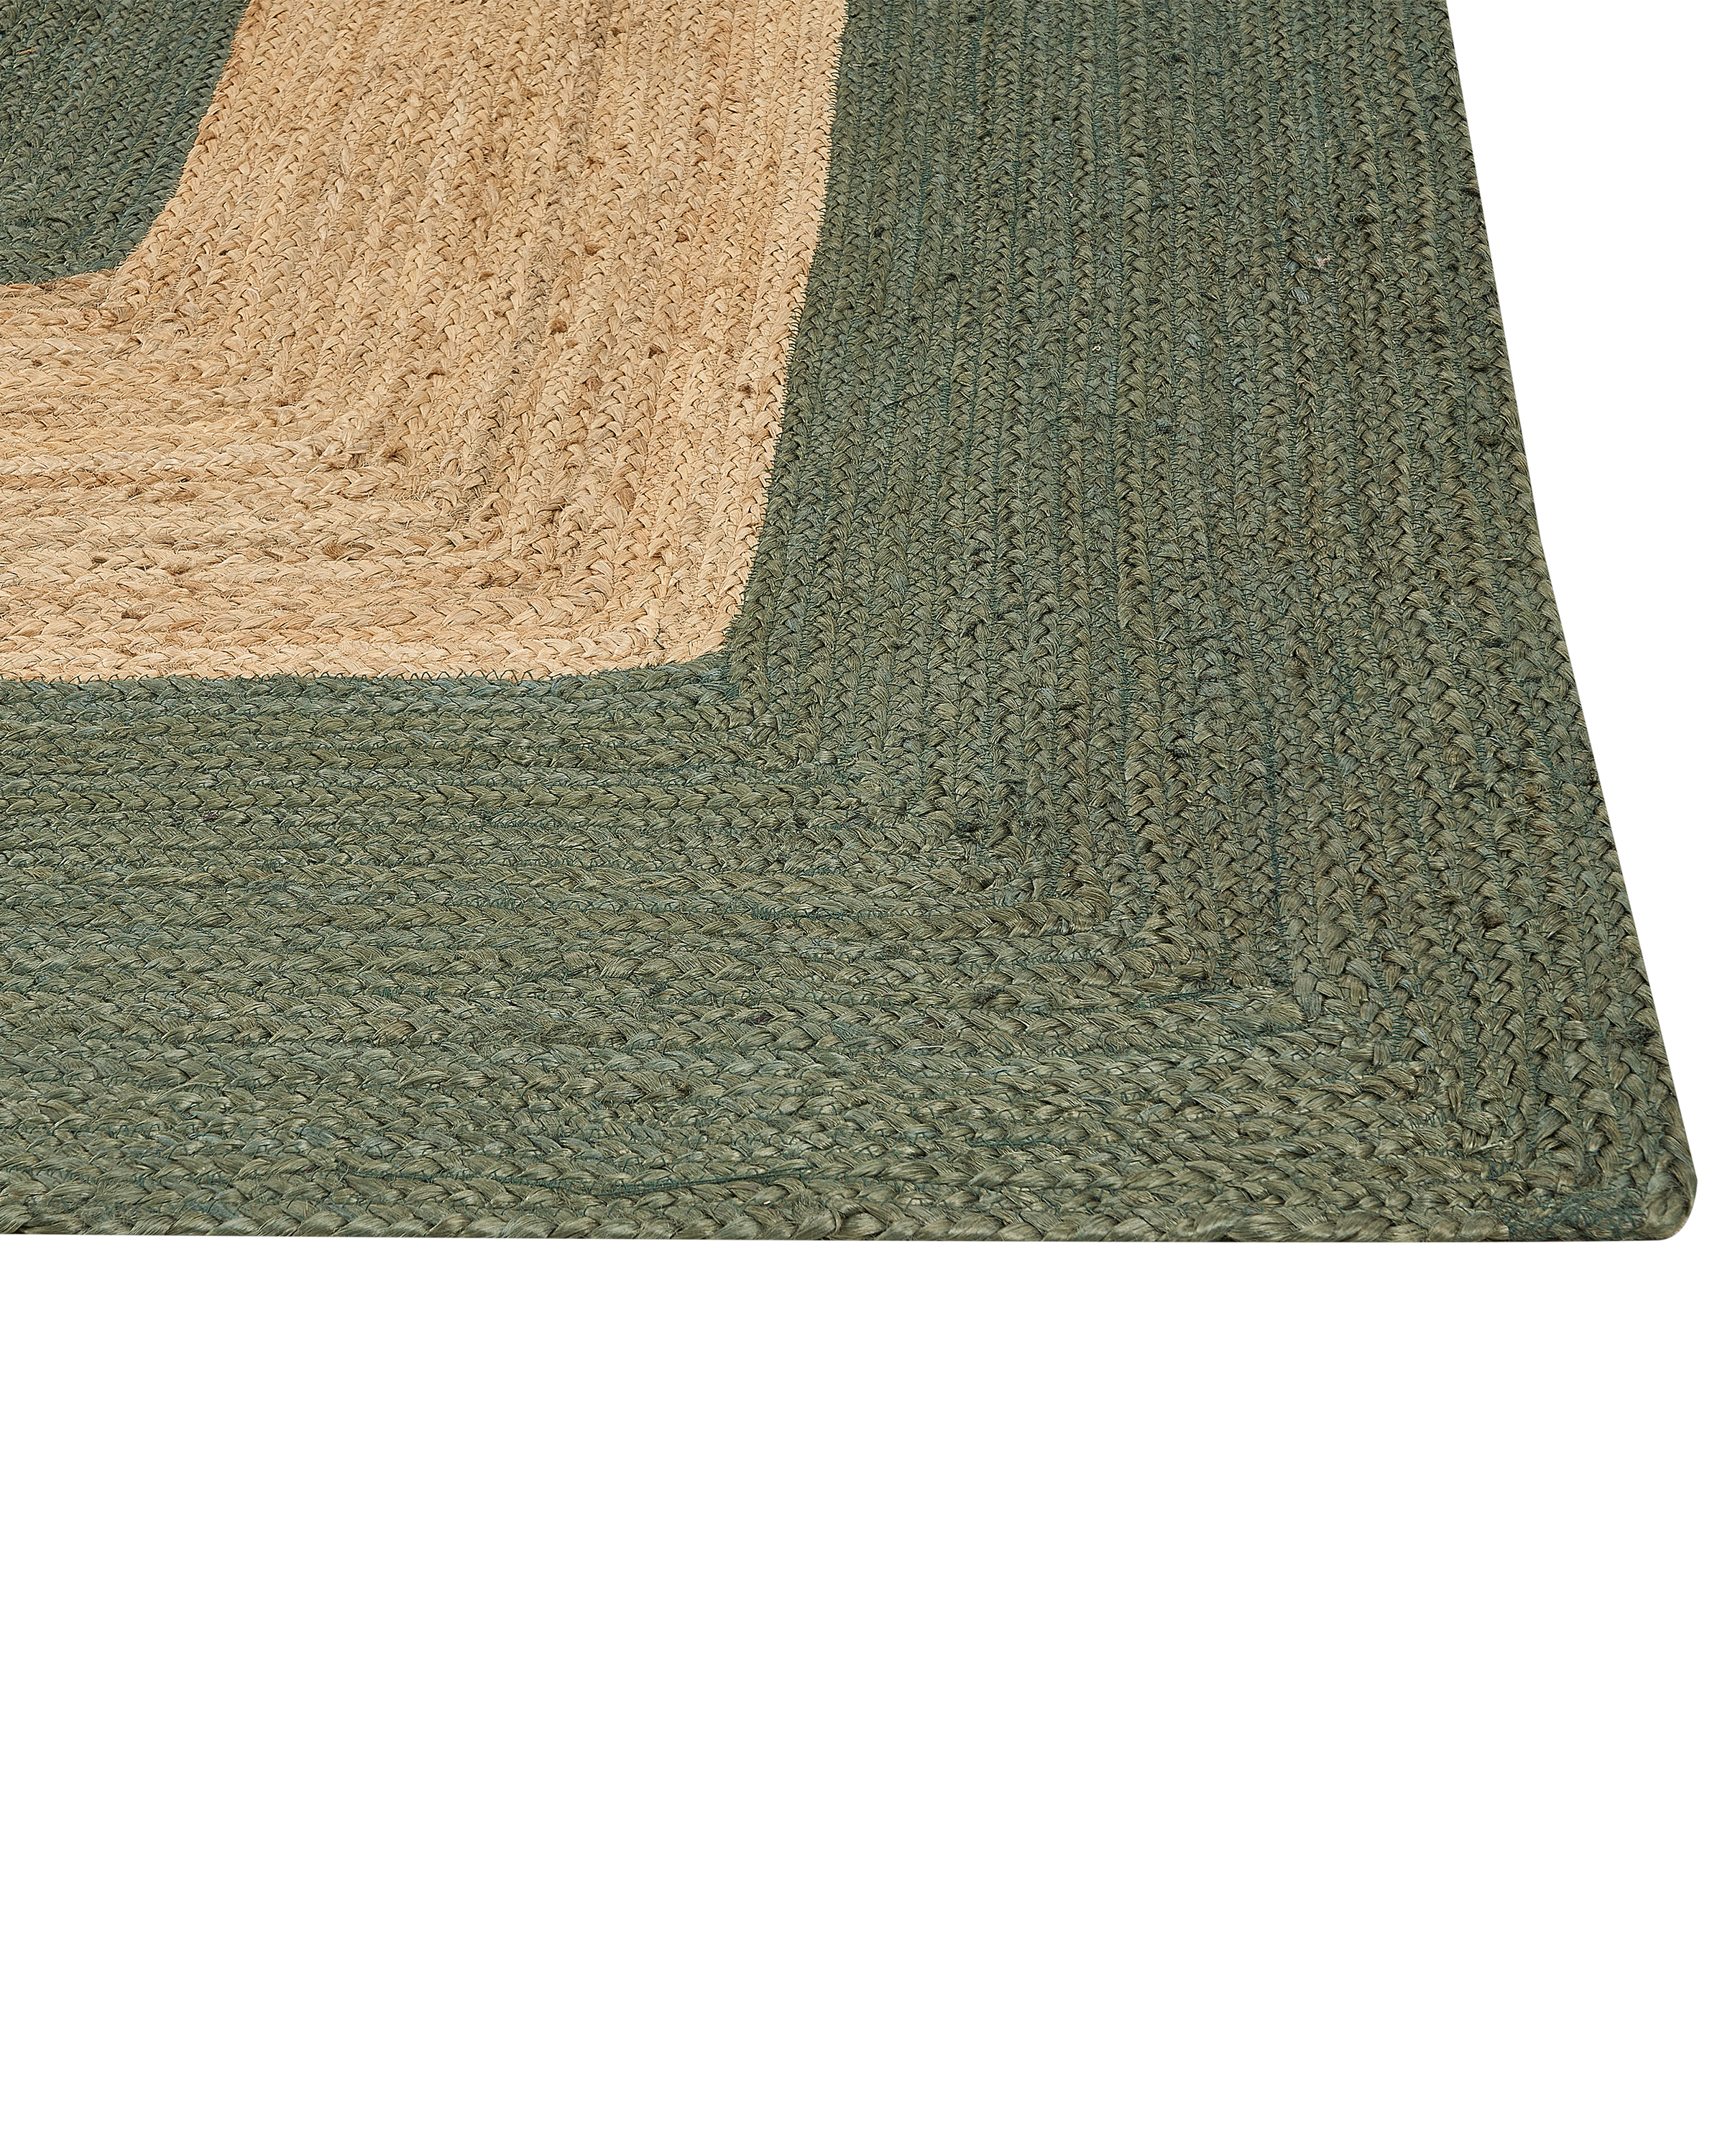 Teppich Jute grün / beige 300 x 400 cm geometrisches Muster Kurzflor KARAKUYU_885140